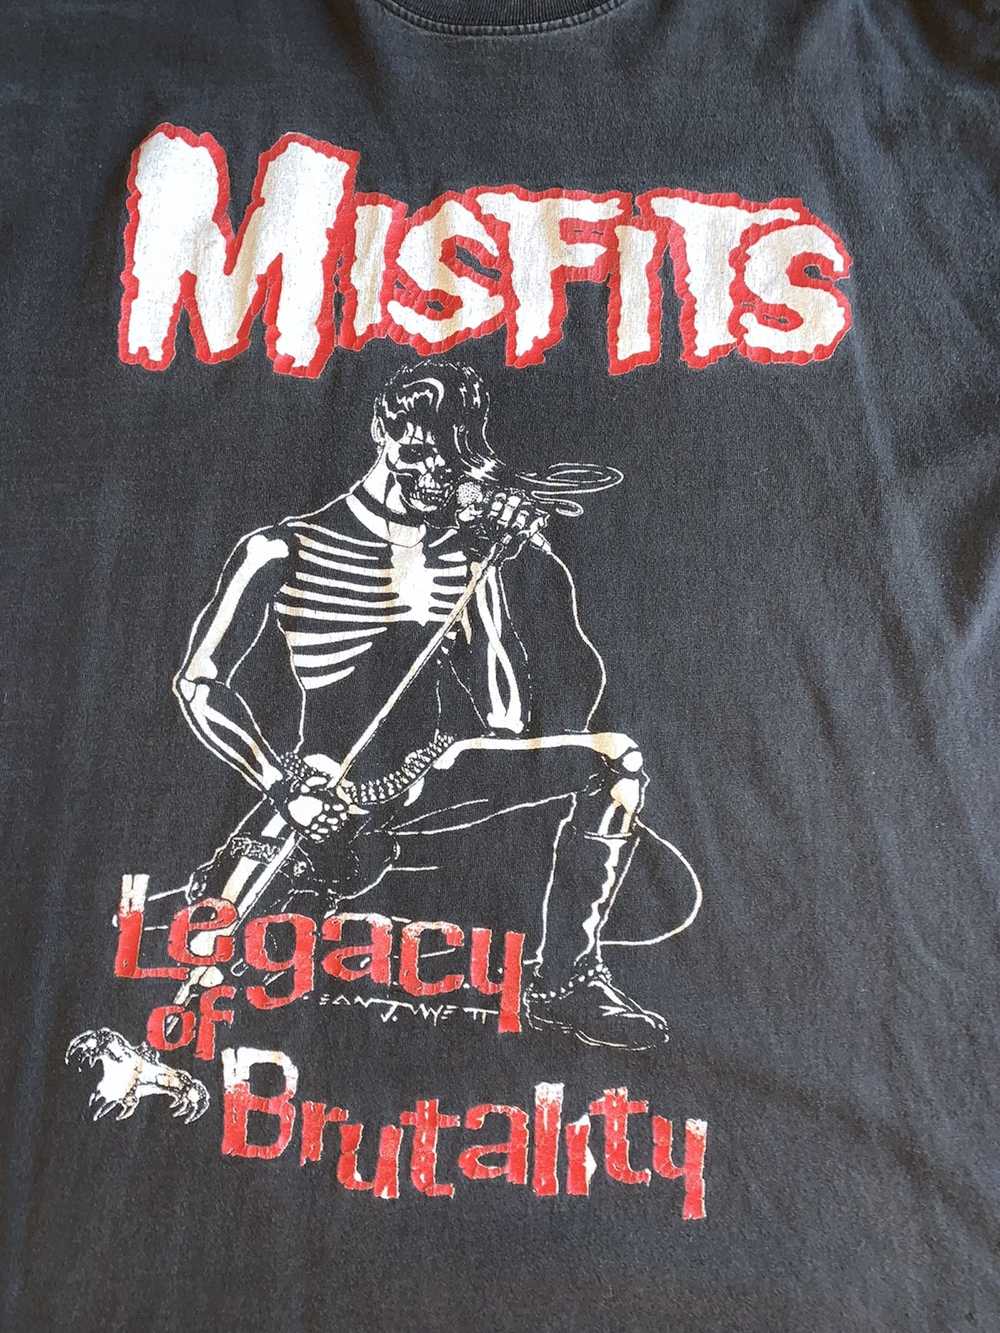 Misfits Misfits Legacy of Brutality tee - image 2